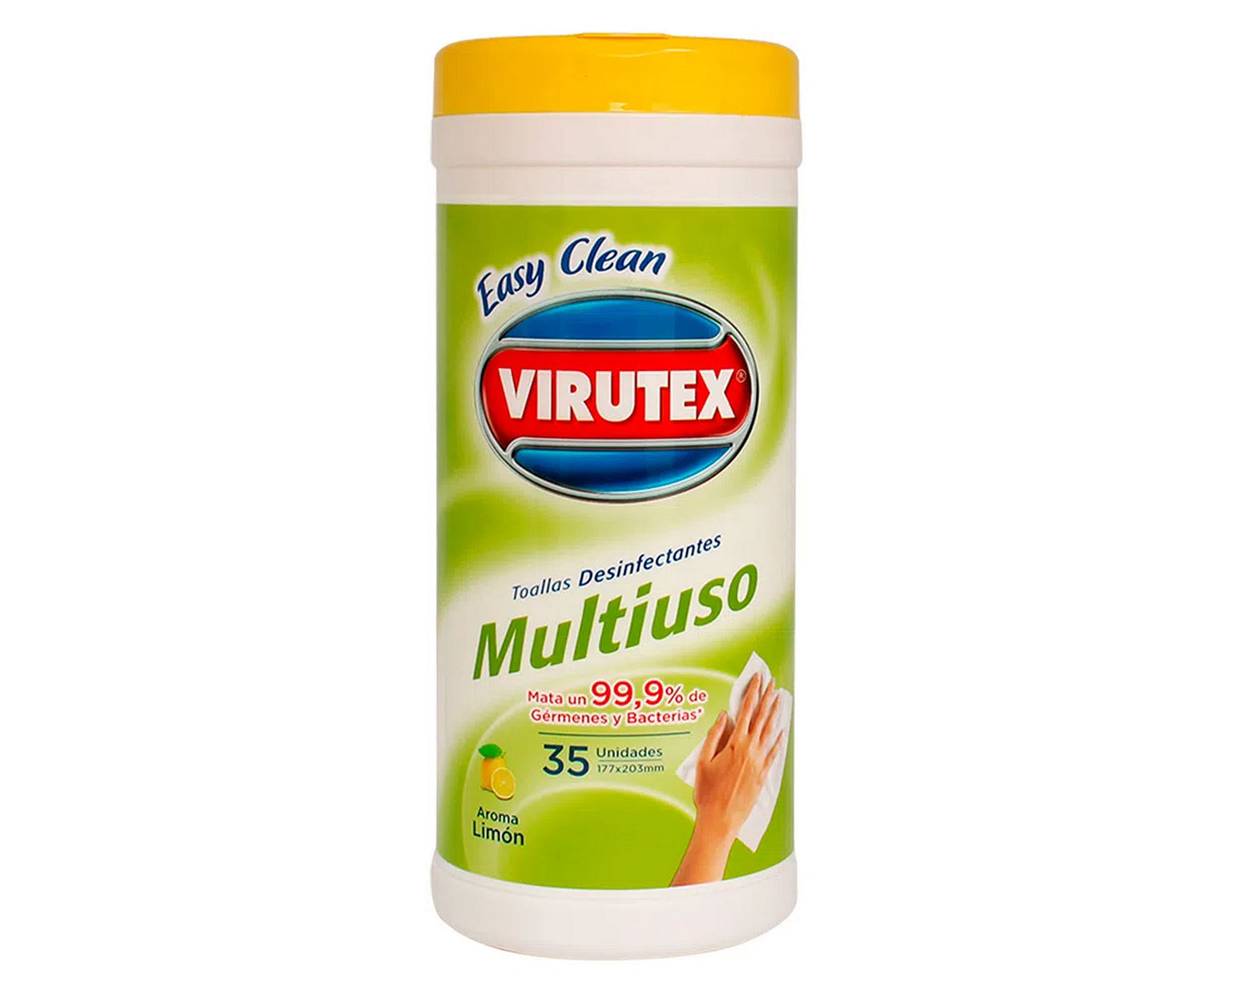 Virutex toallas desinfectantes multiuso aroma limón (frasco 35 u)